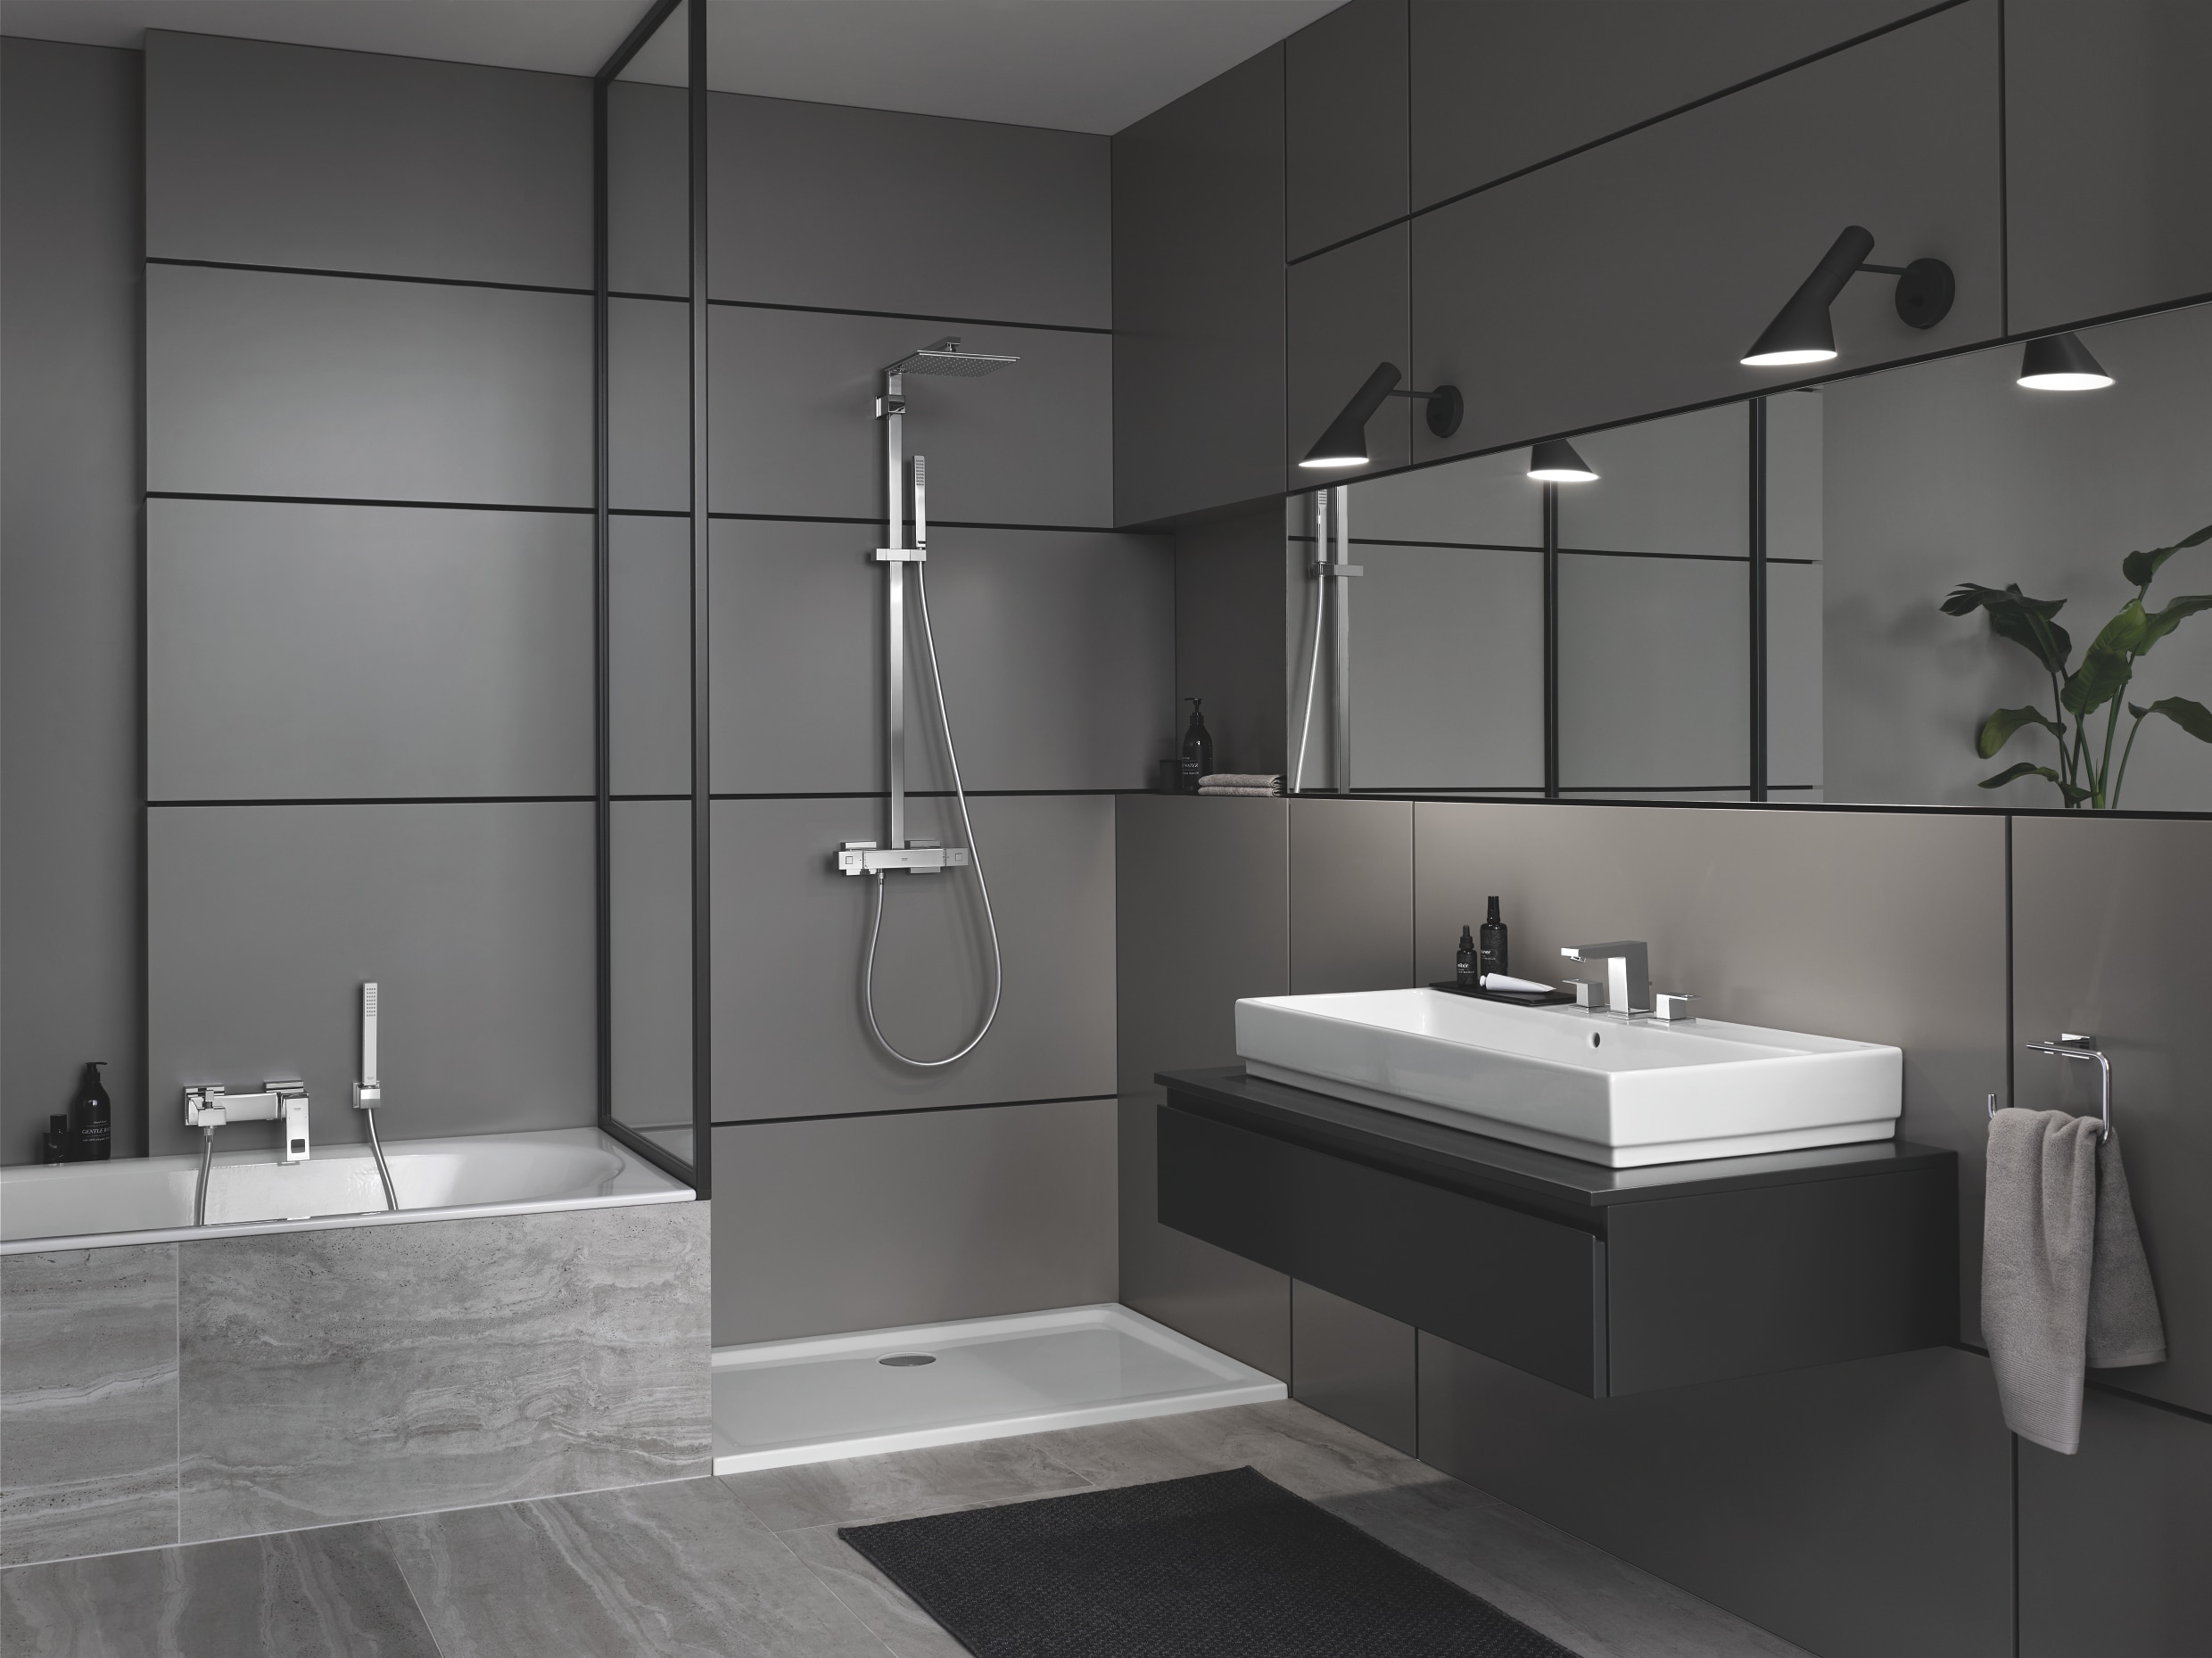 Grohe zeigt ein Badezimmer mit Eurocube Armaturen, Euphoria Duschsystem, sowie Cube Keramik Waschbecken.